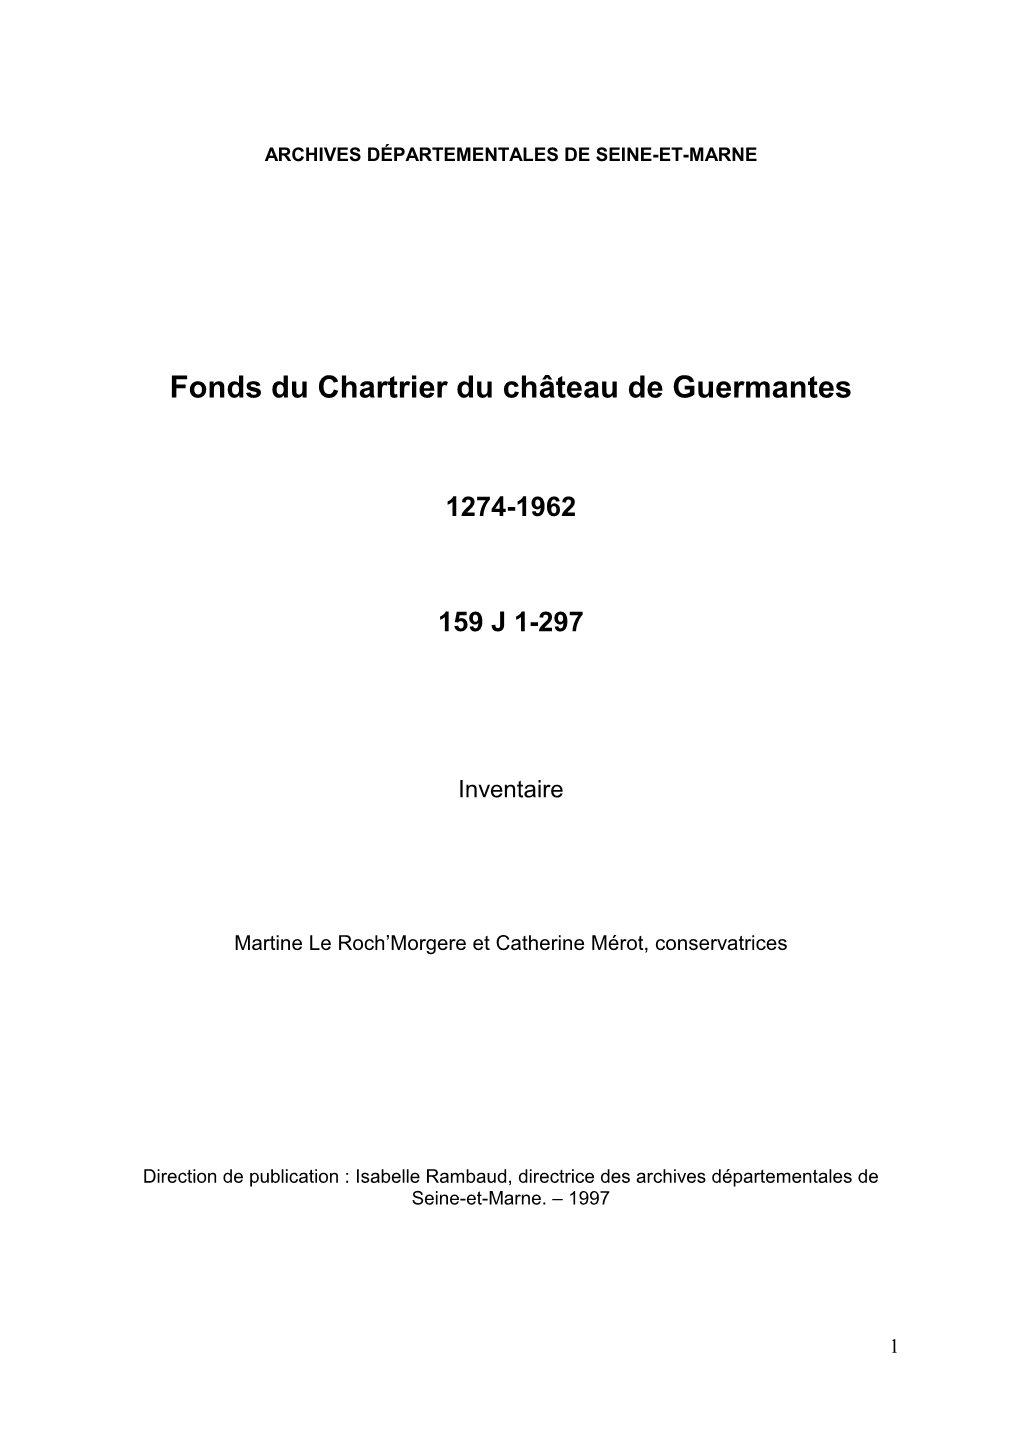 Inventaire Du Fonds Du Chartrier Du Château De Guermantes